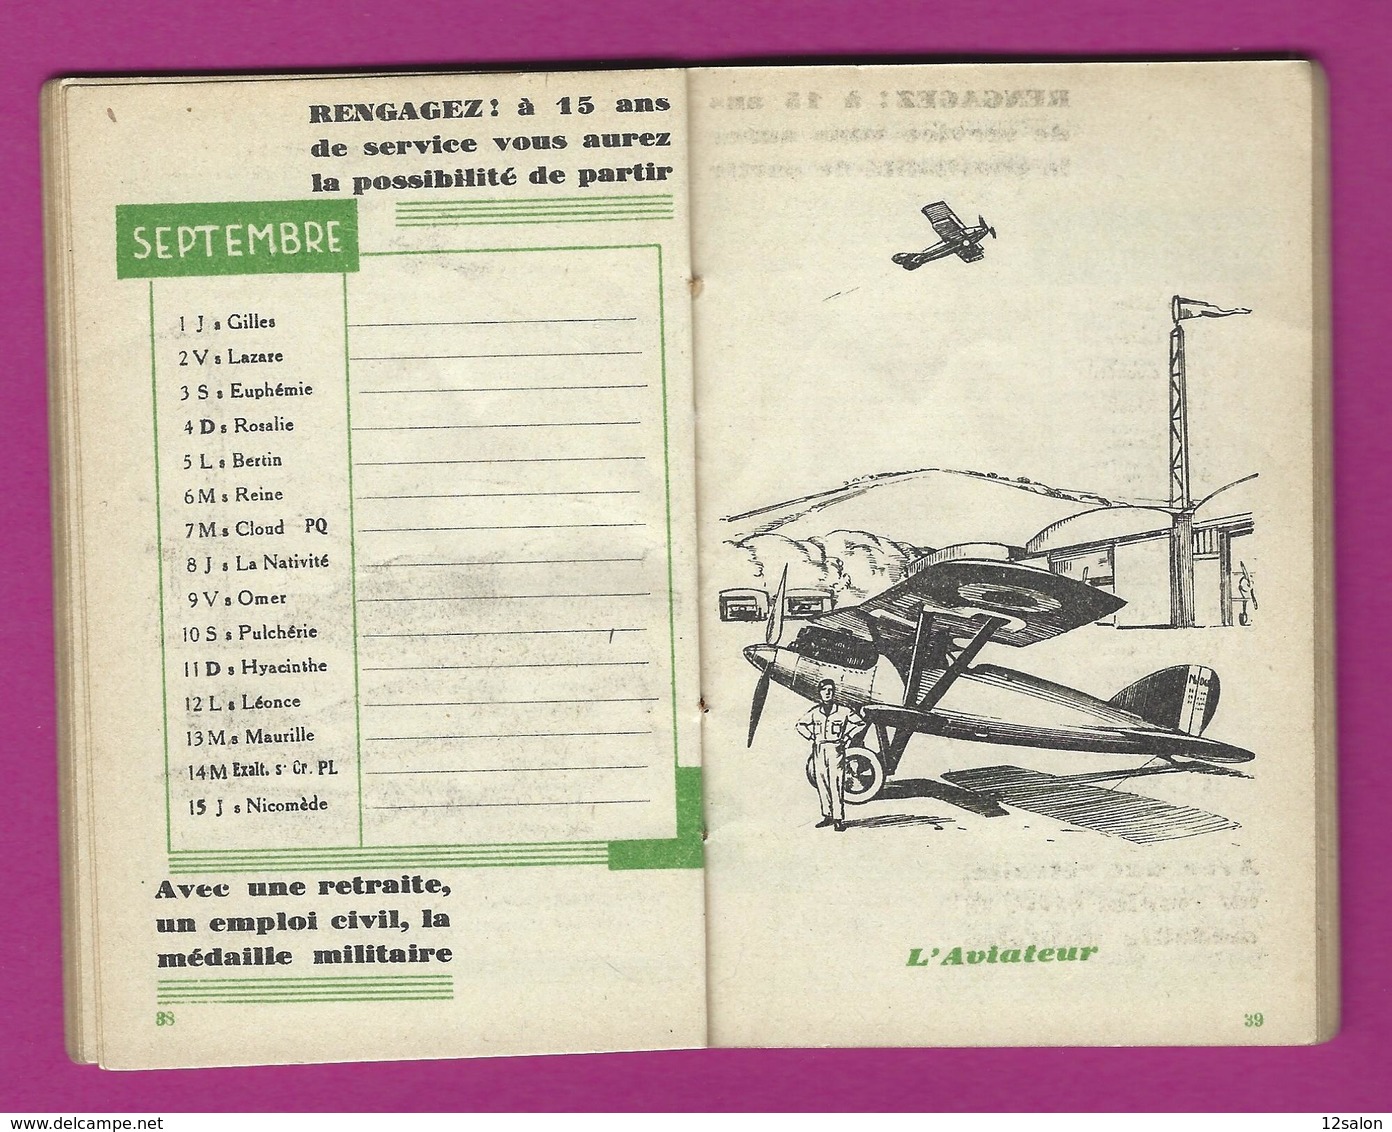 CALENDRIER DU SOLDAT FRANCAIS 1932 - Documenten